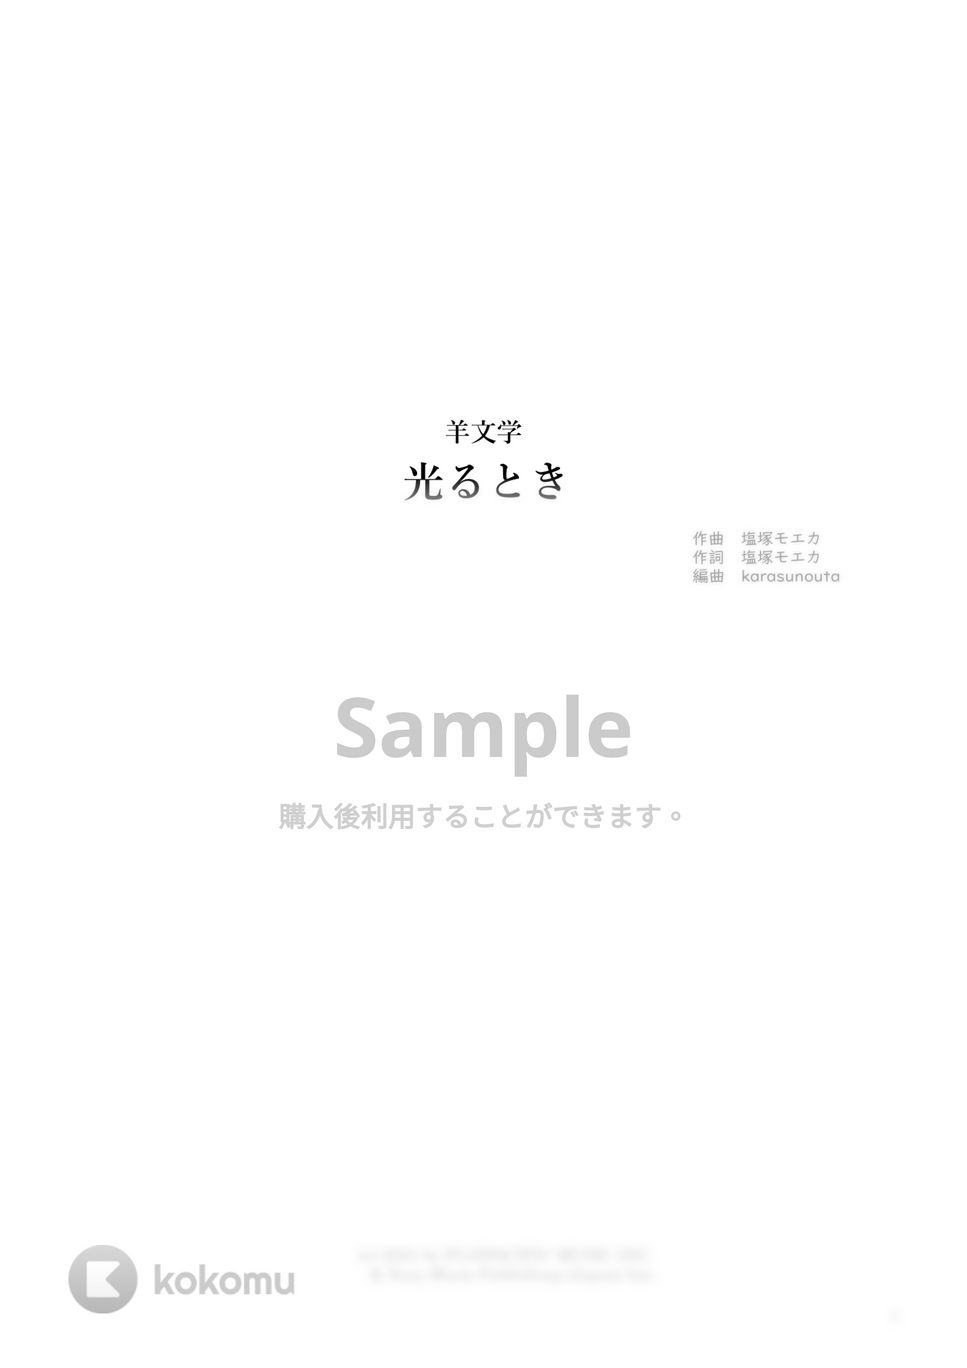 羊文学 - 光るとき (ピアノ弾き語り / 歌詞付き / コード付き) by karasunouta